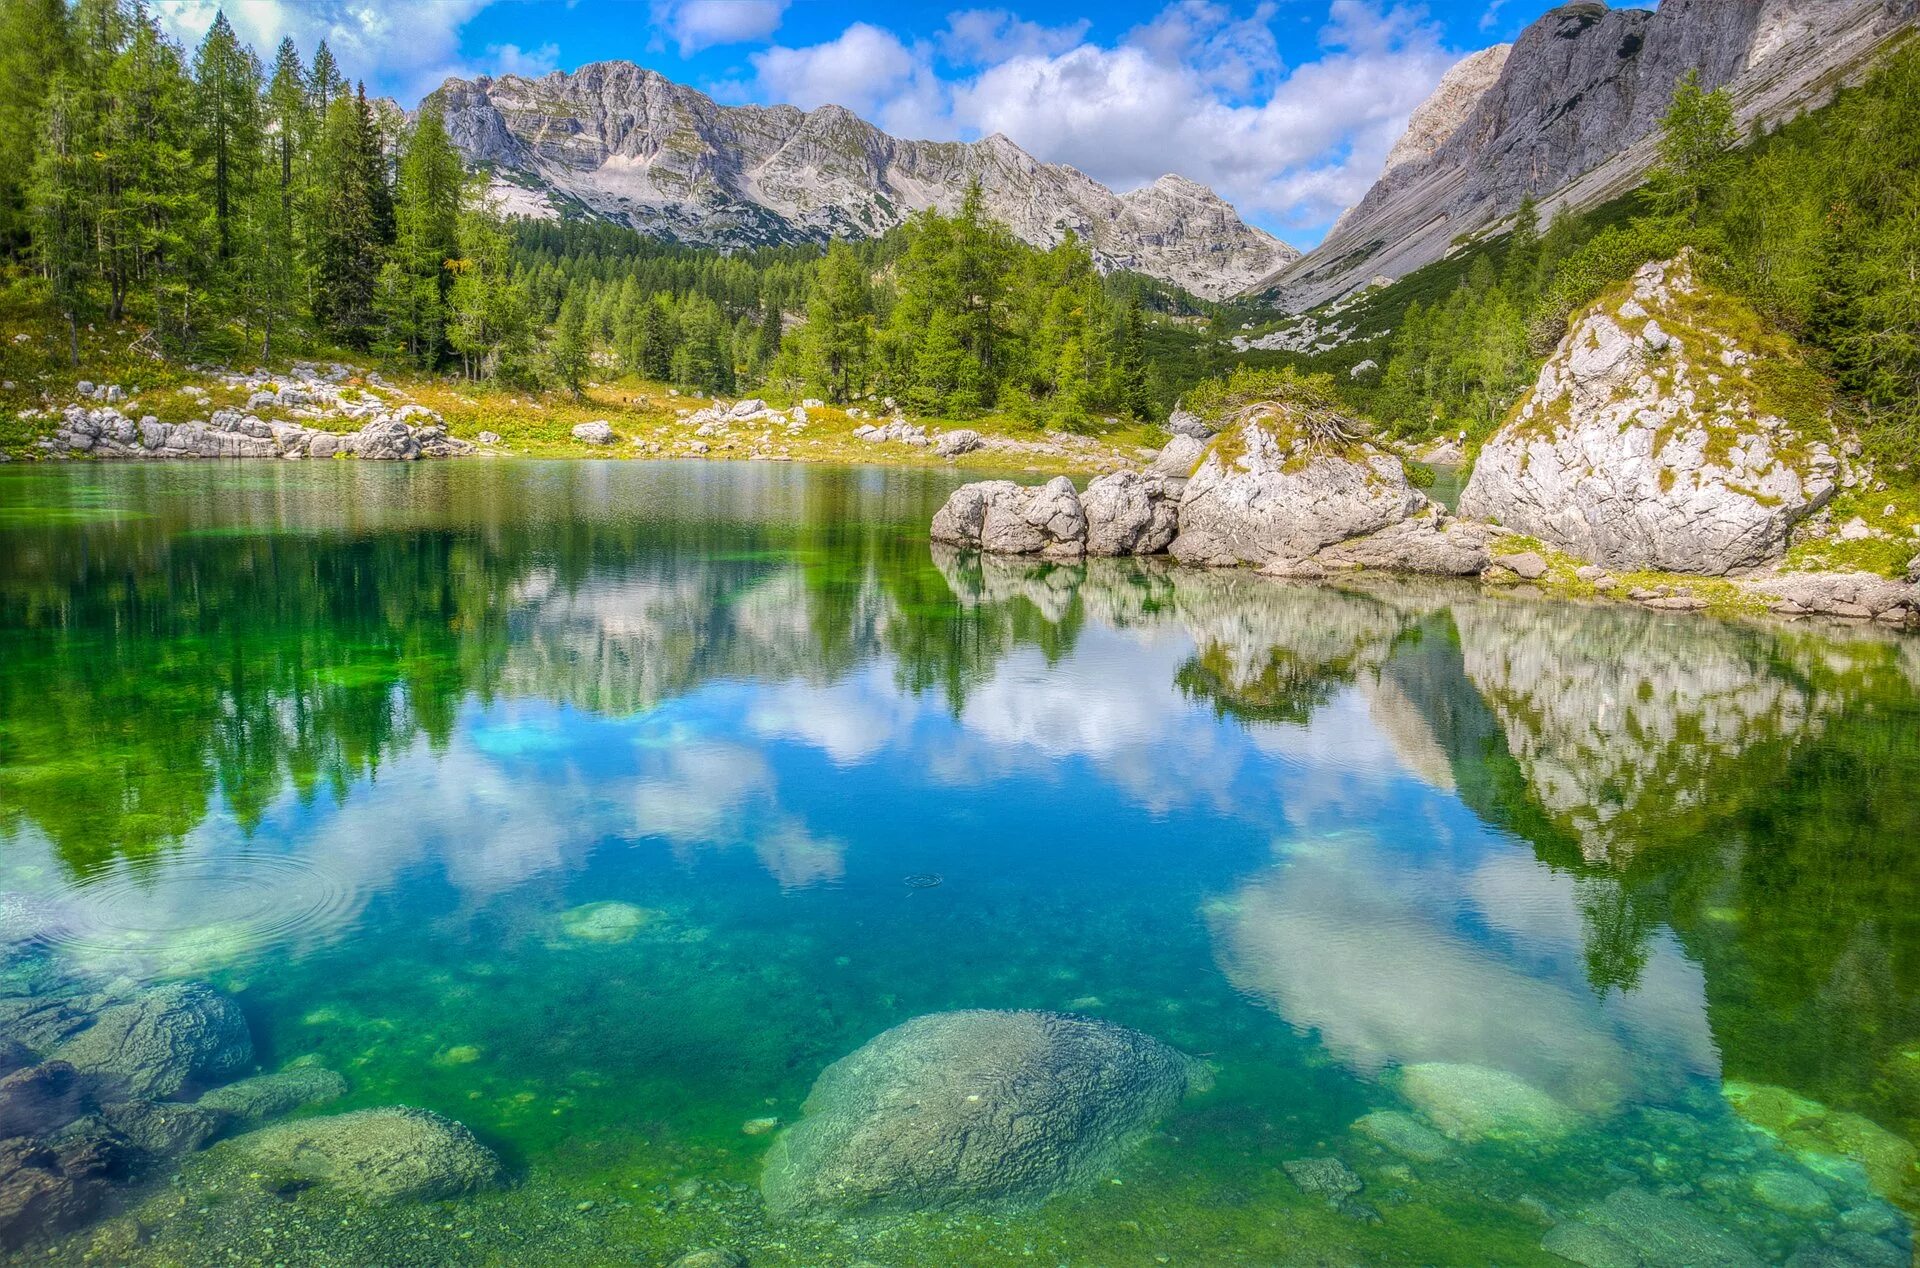 Картинка на обои высокого качества. Озеро Триглав. Голубое озеро Альпы. Национальный парк Триглав. Озеро Дарашколь.